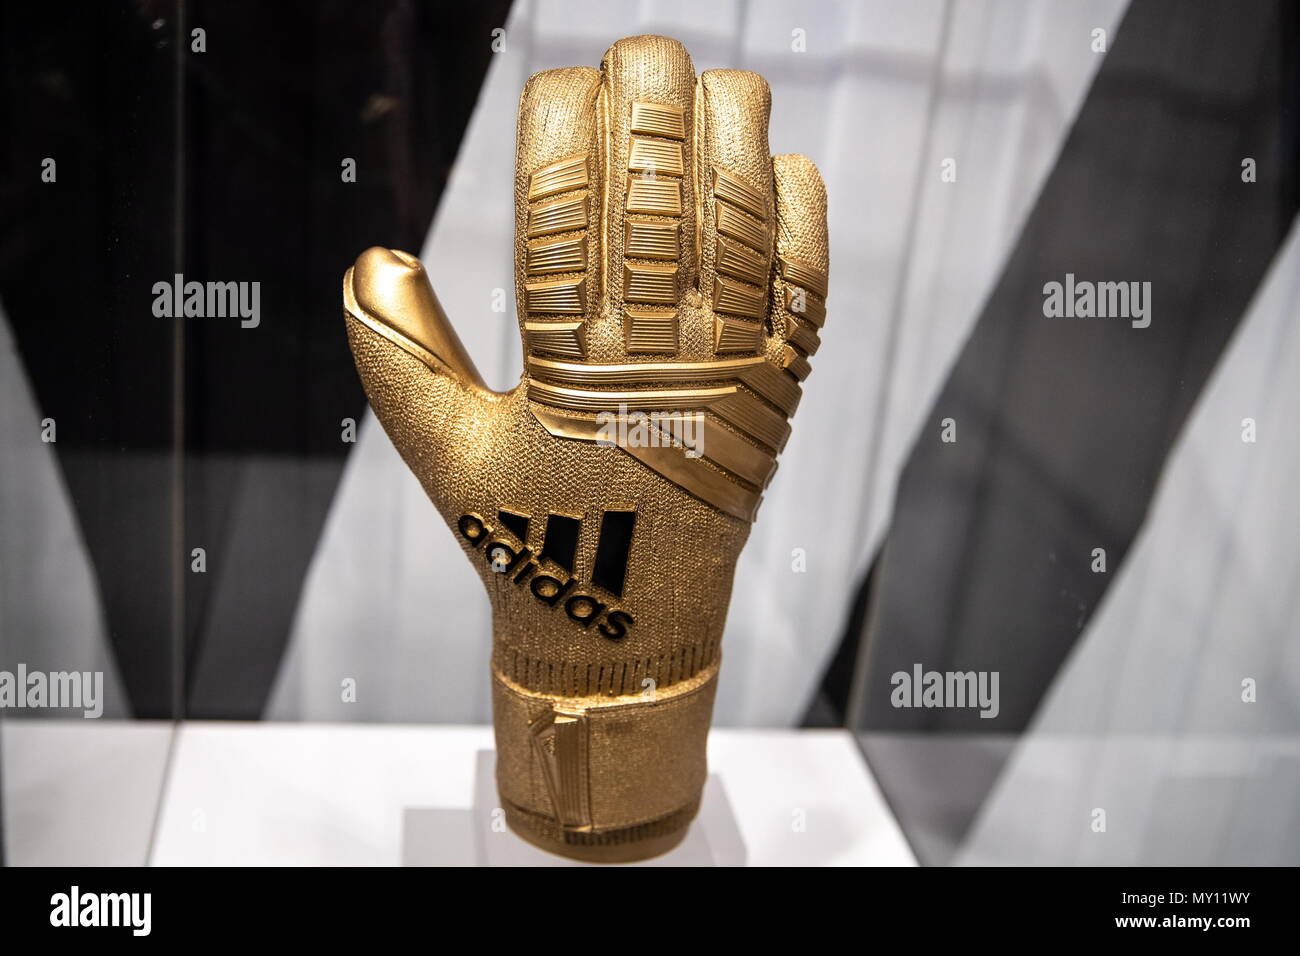 adidas golden glove